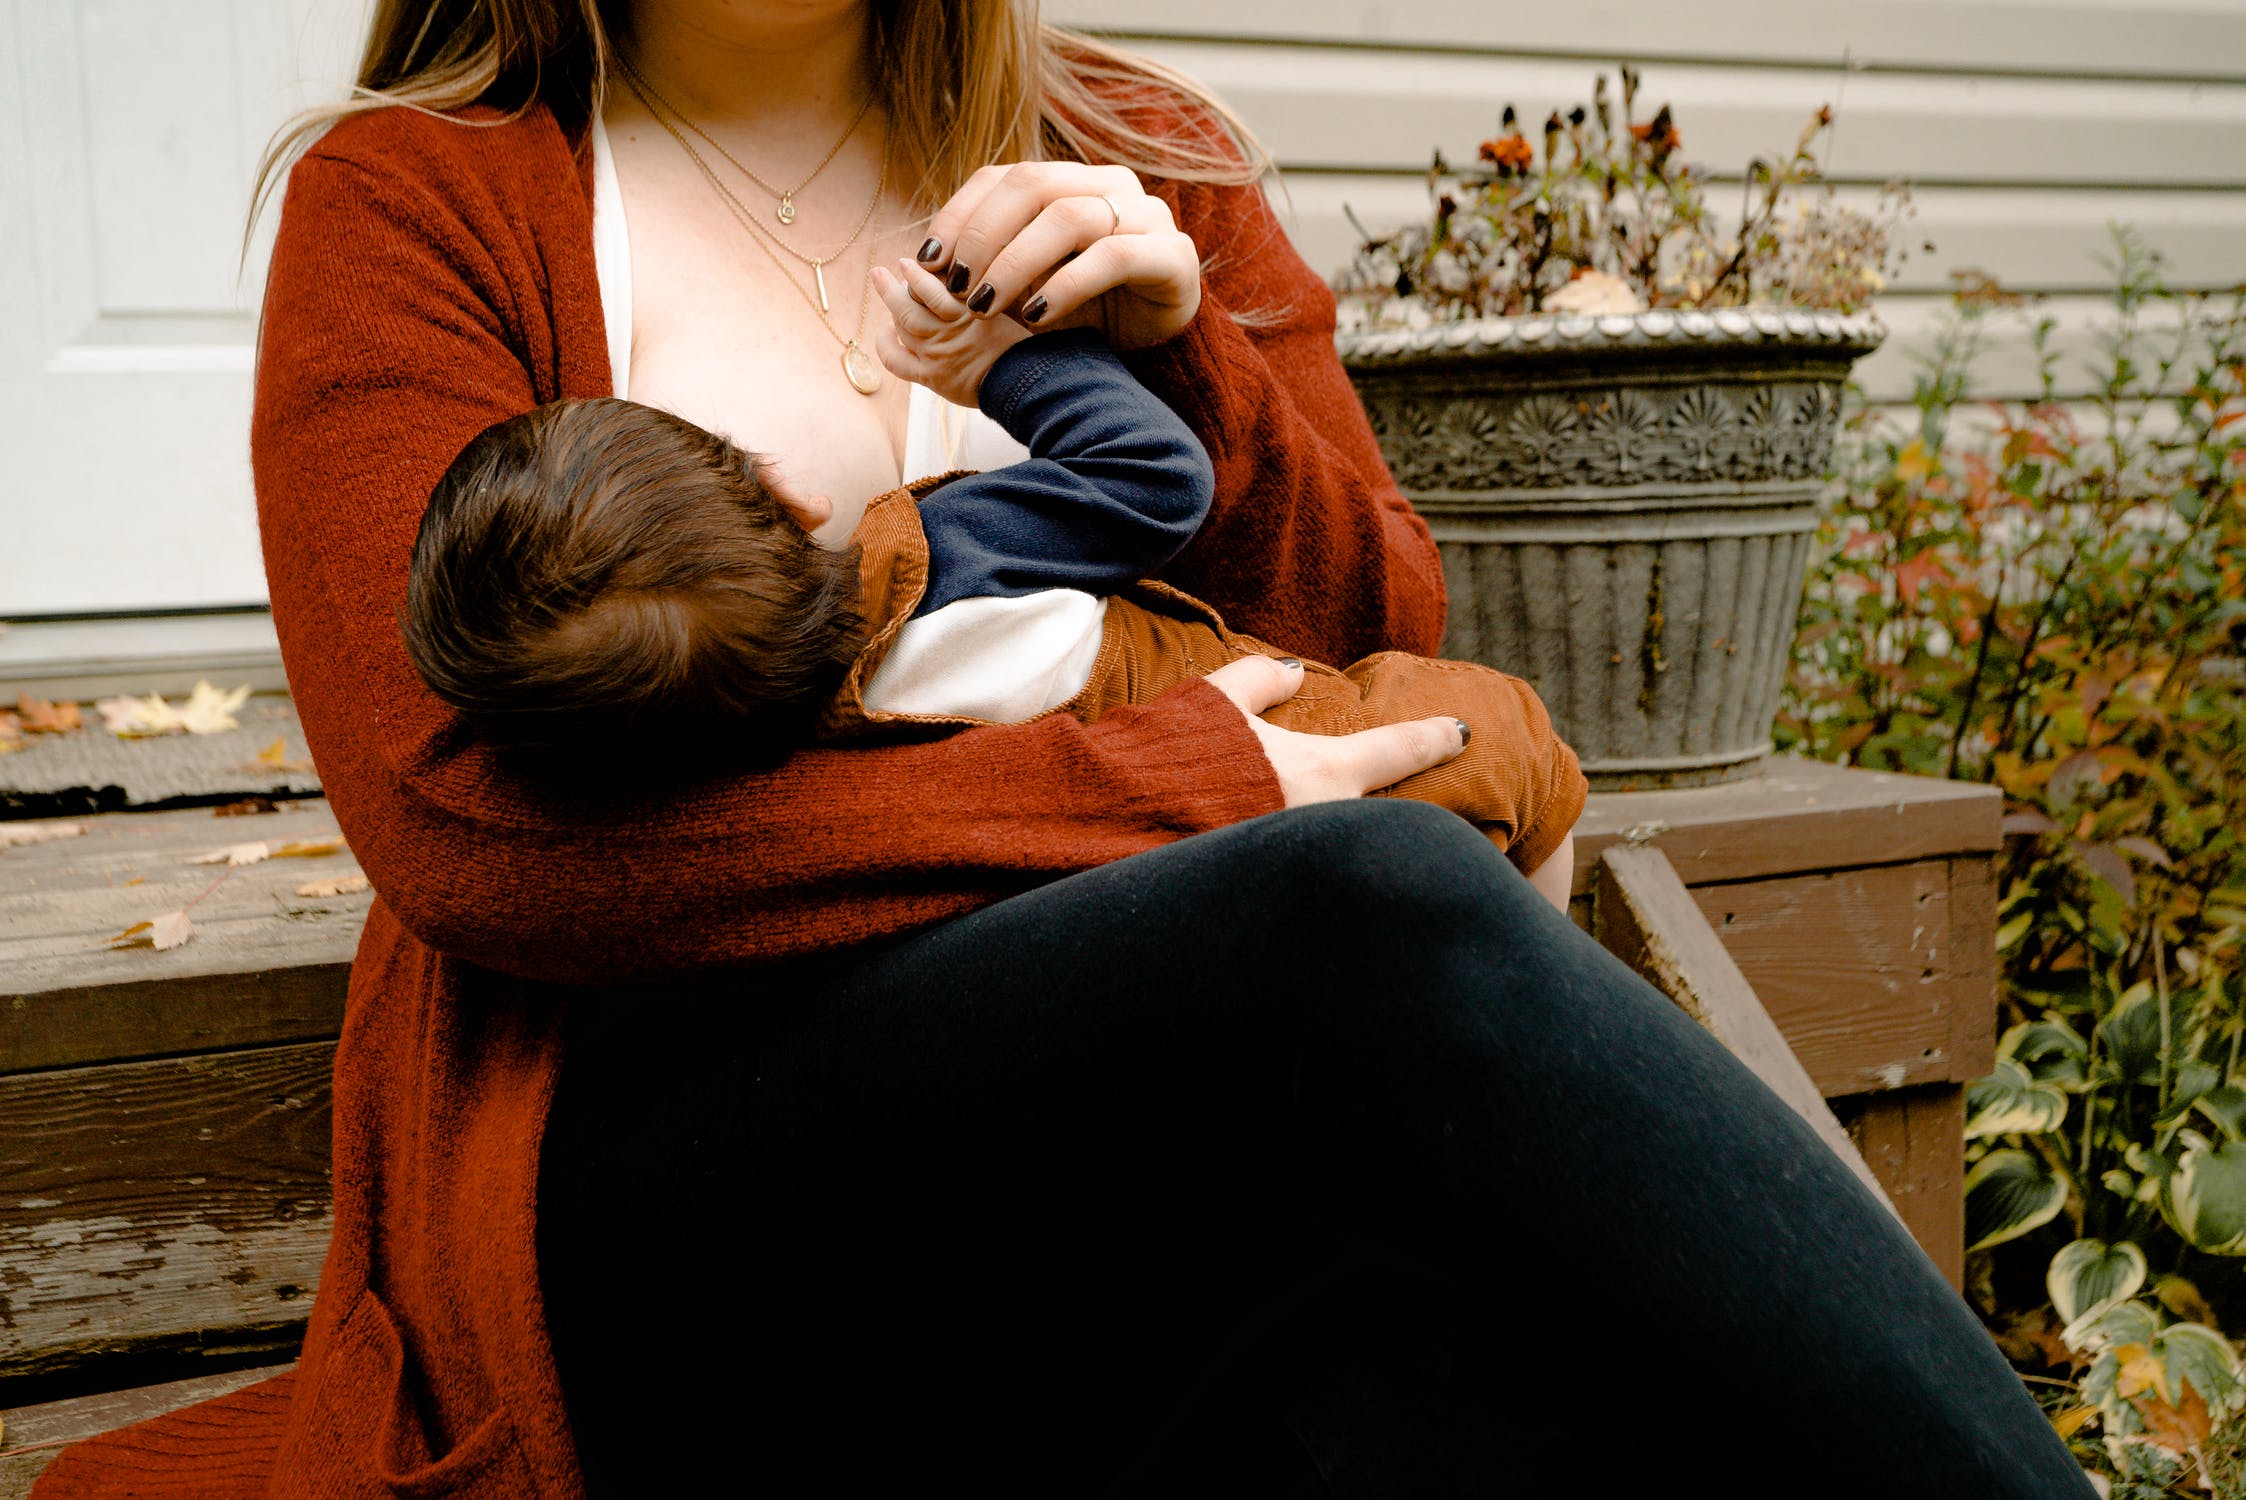 Une femme assise sur un banc, allaitant son enfant.